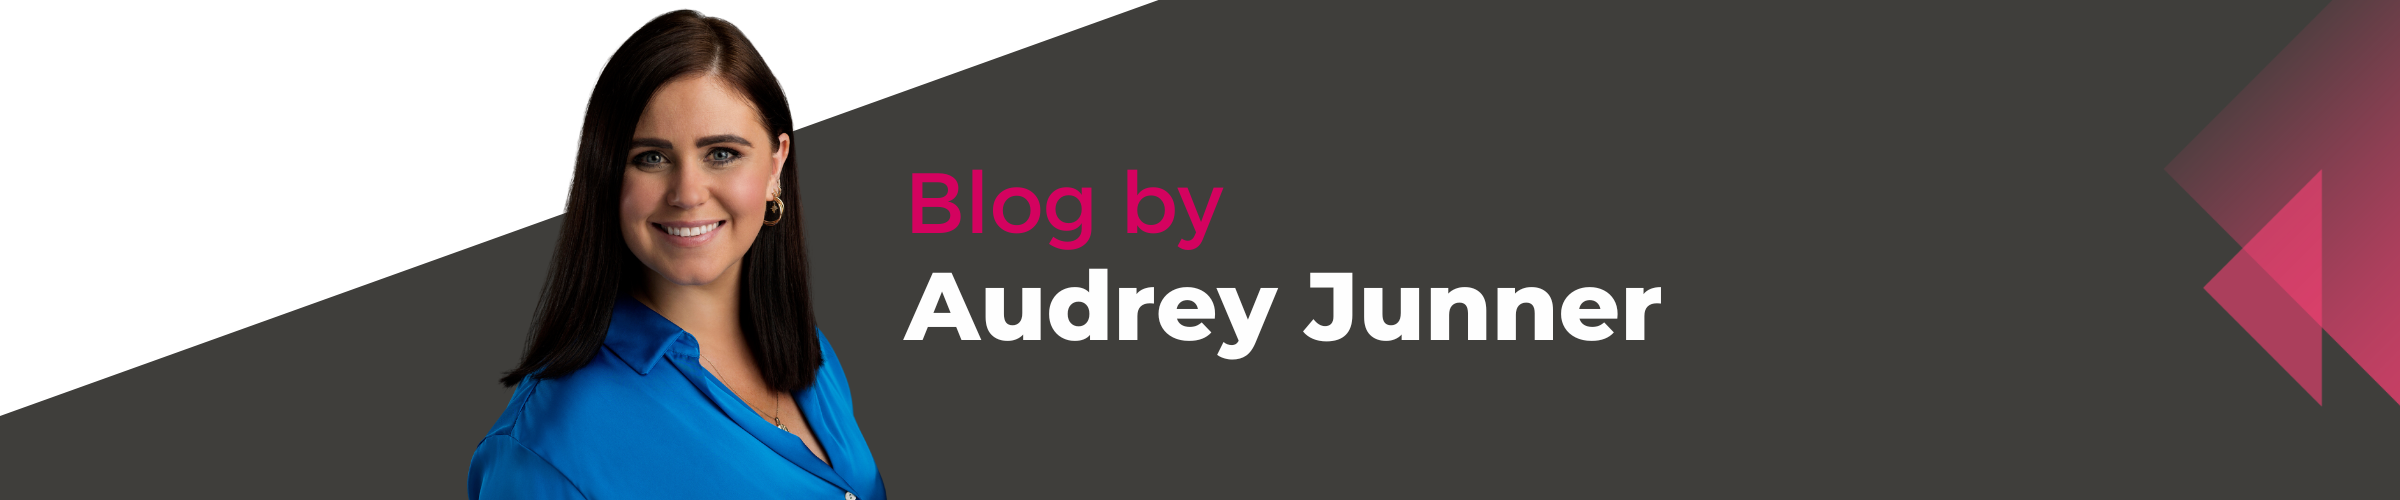 Audrey Junner